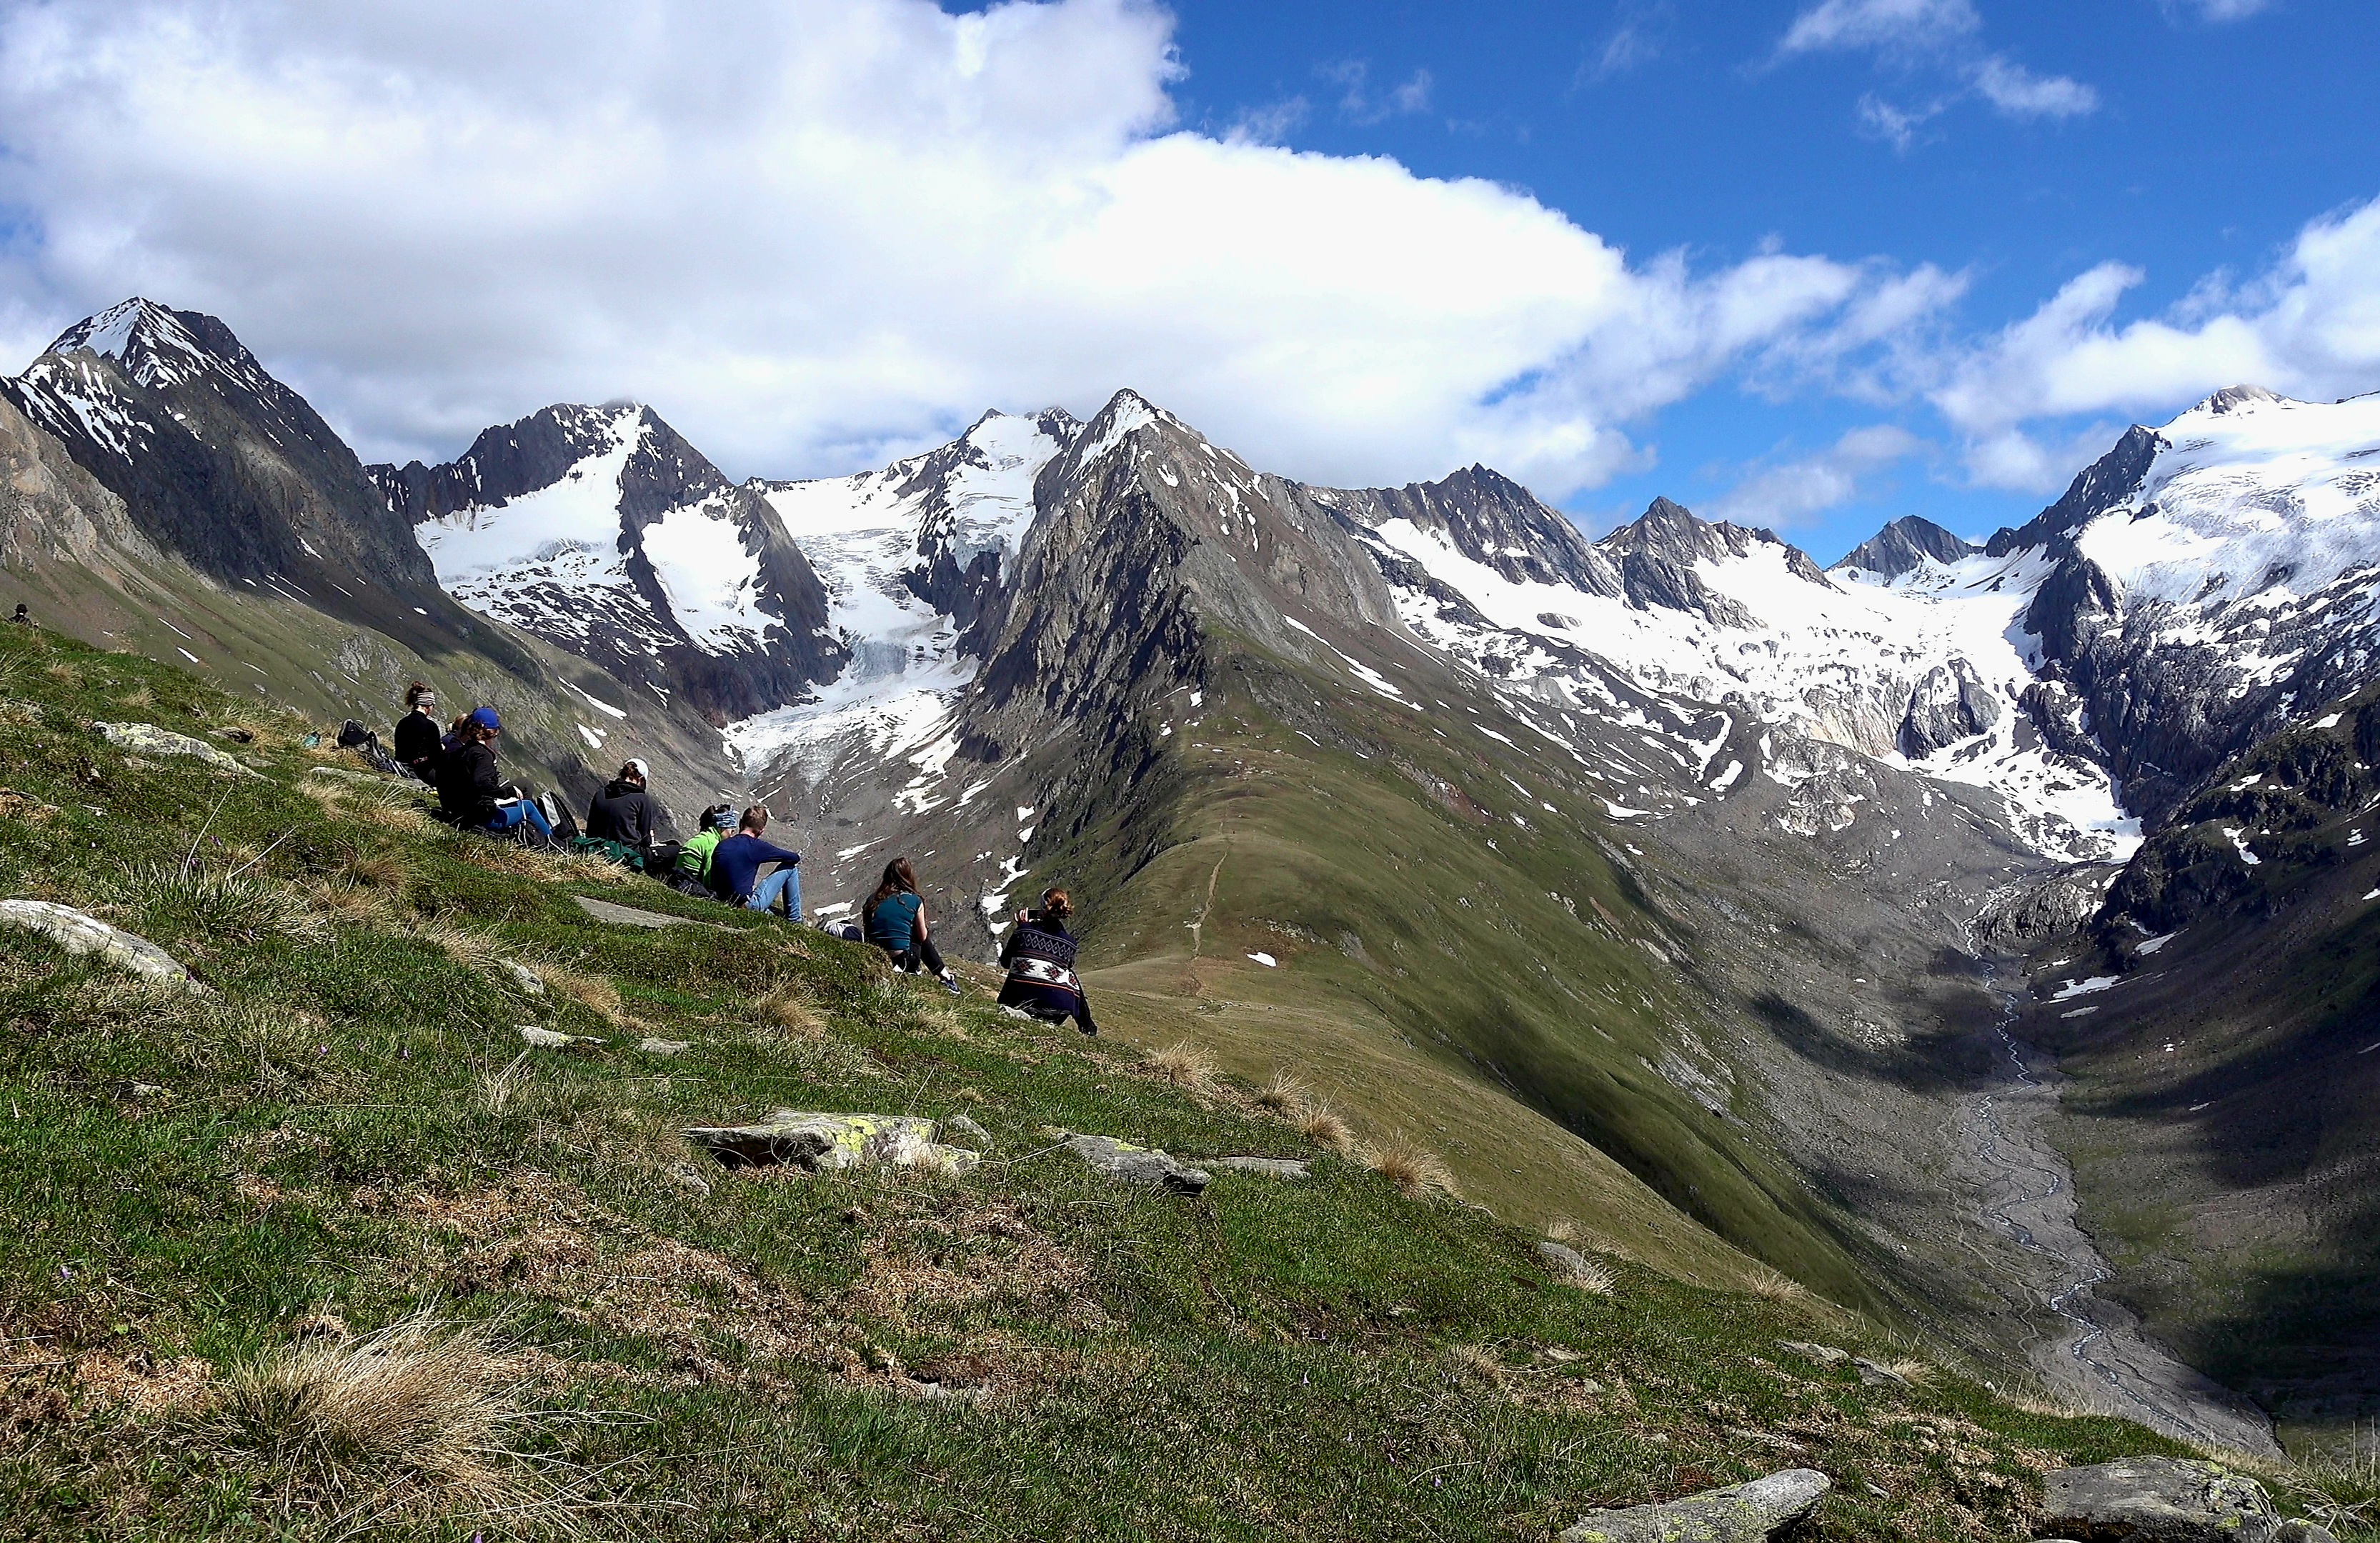 Auf dem Bild sieht man das Gebrige der Alpen und die Exkursionsteilnehmen, die dort auf der Wiese sitzen